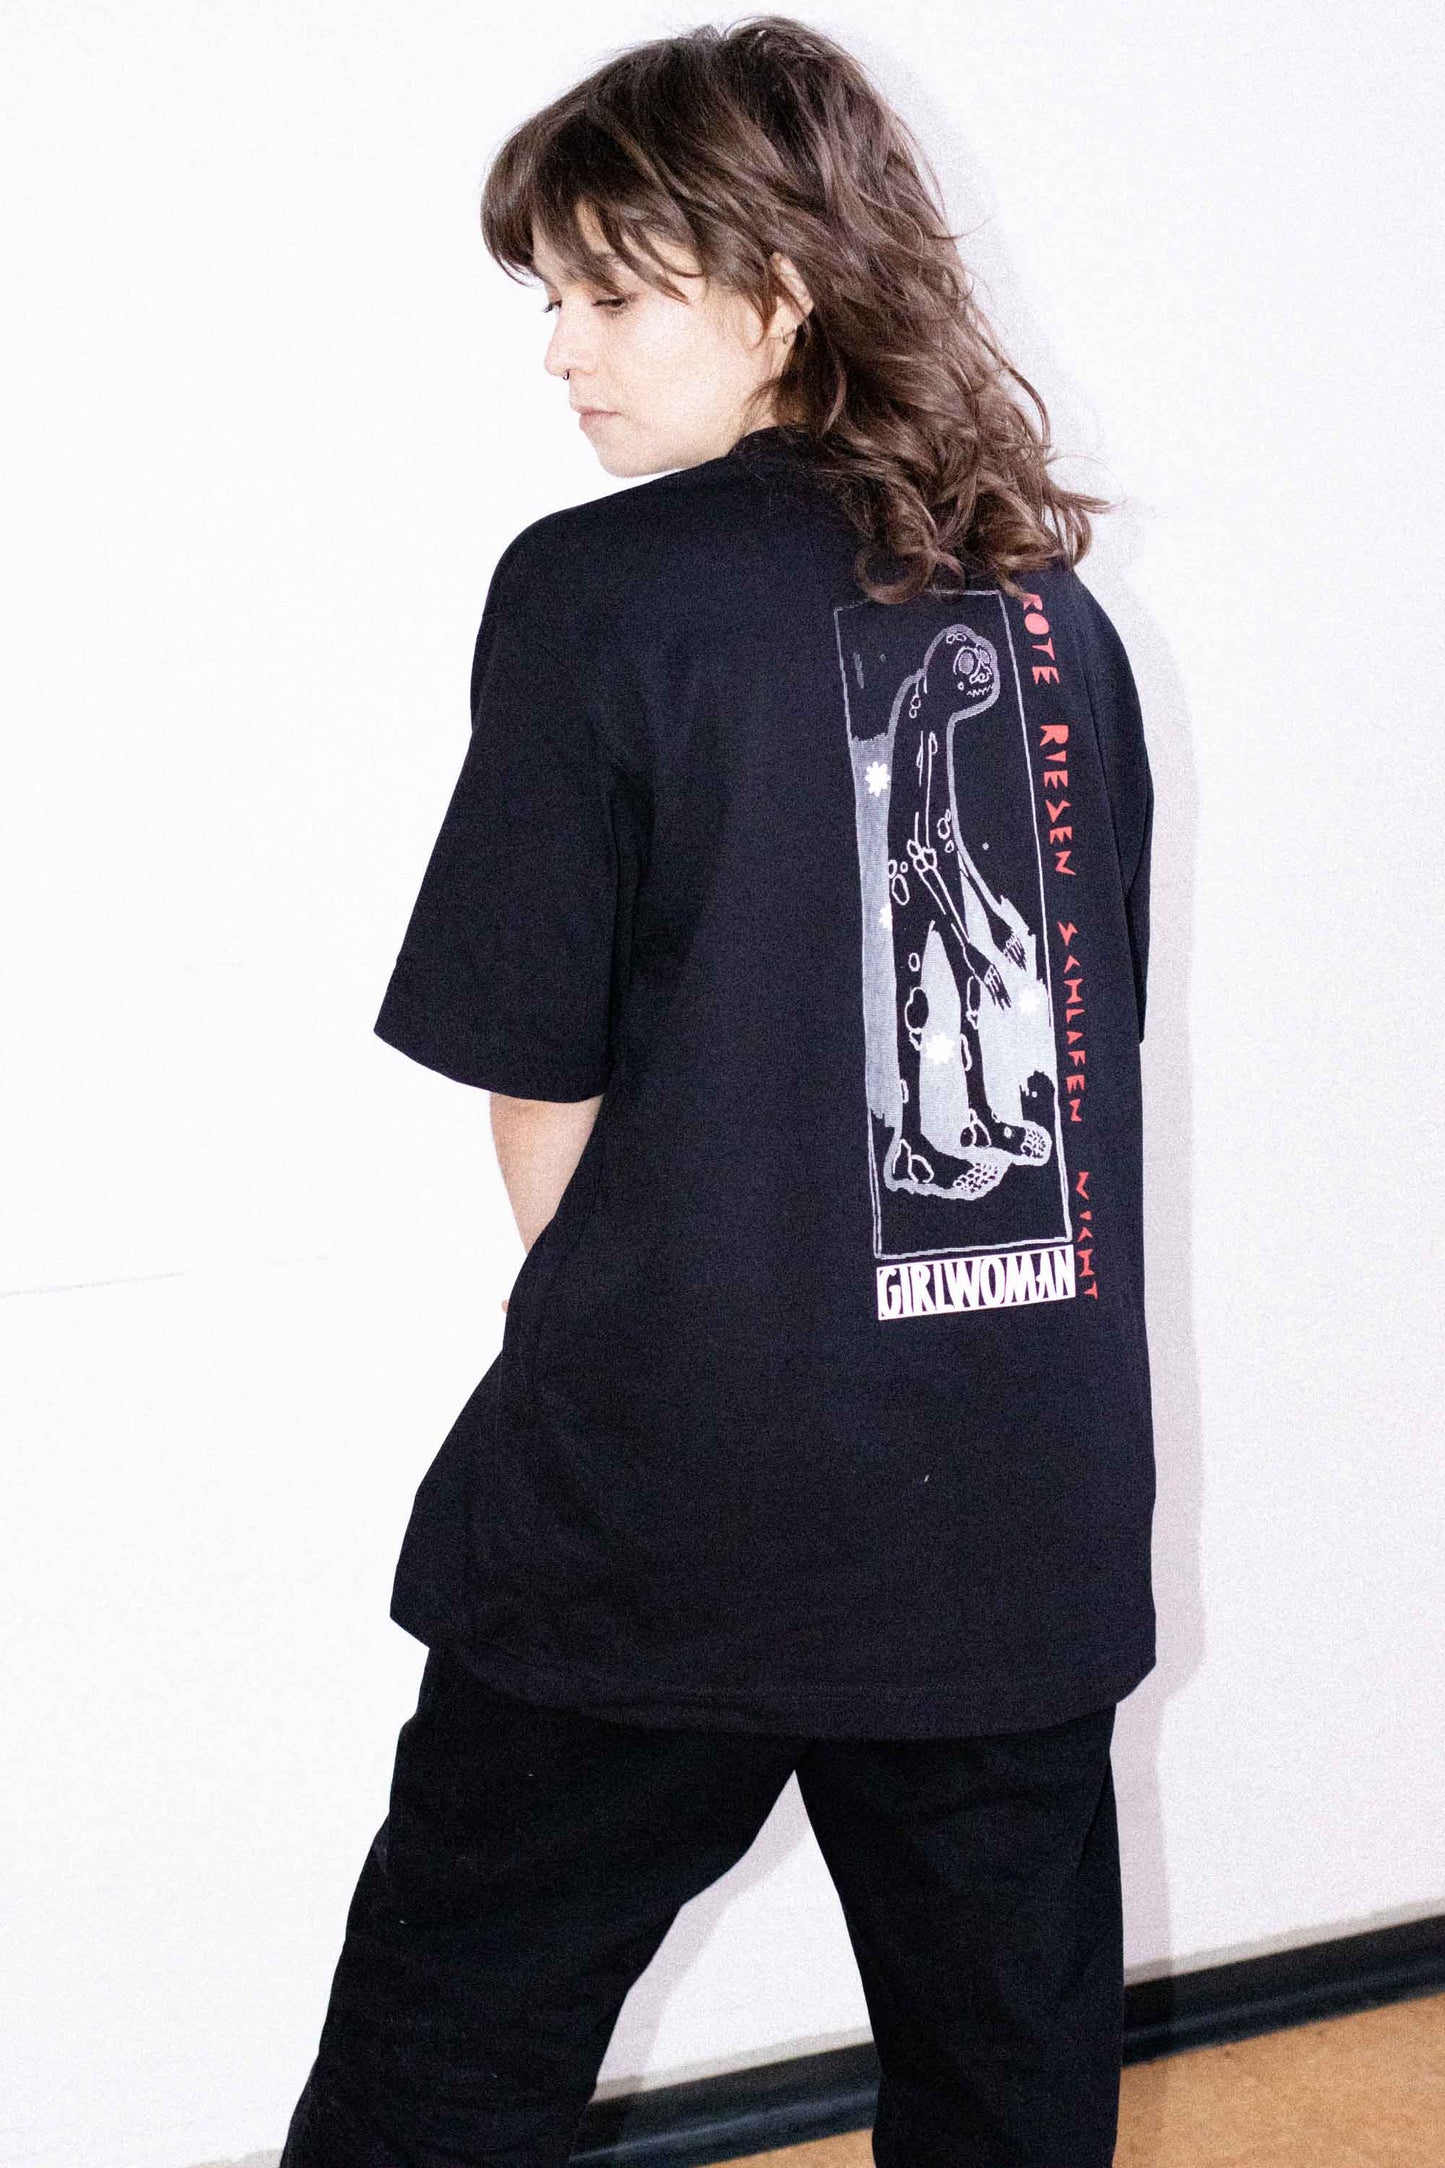 "Rote Riesen schlafen nicht" T-Shirt Girlwoman Merchandise. Oversized Fit. Schwere Stoffqualität 100% Cotton.